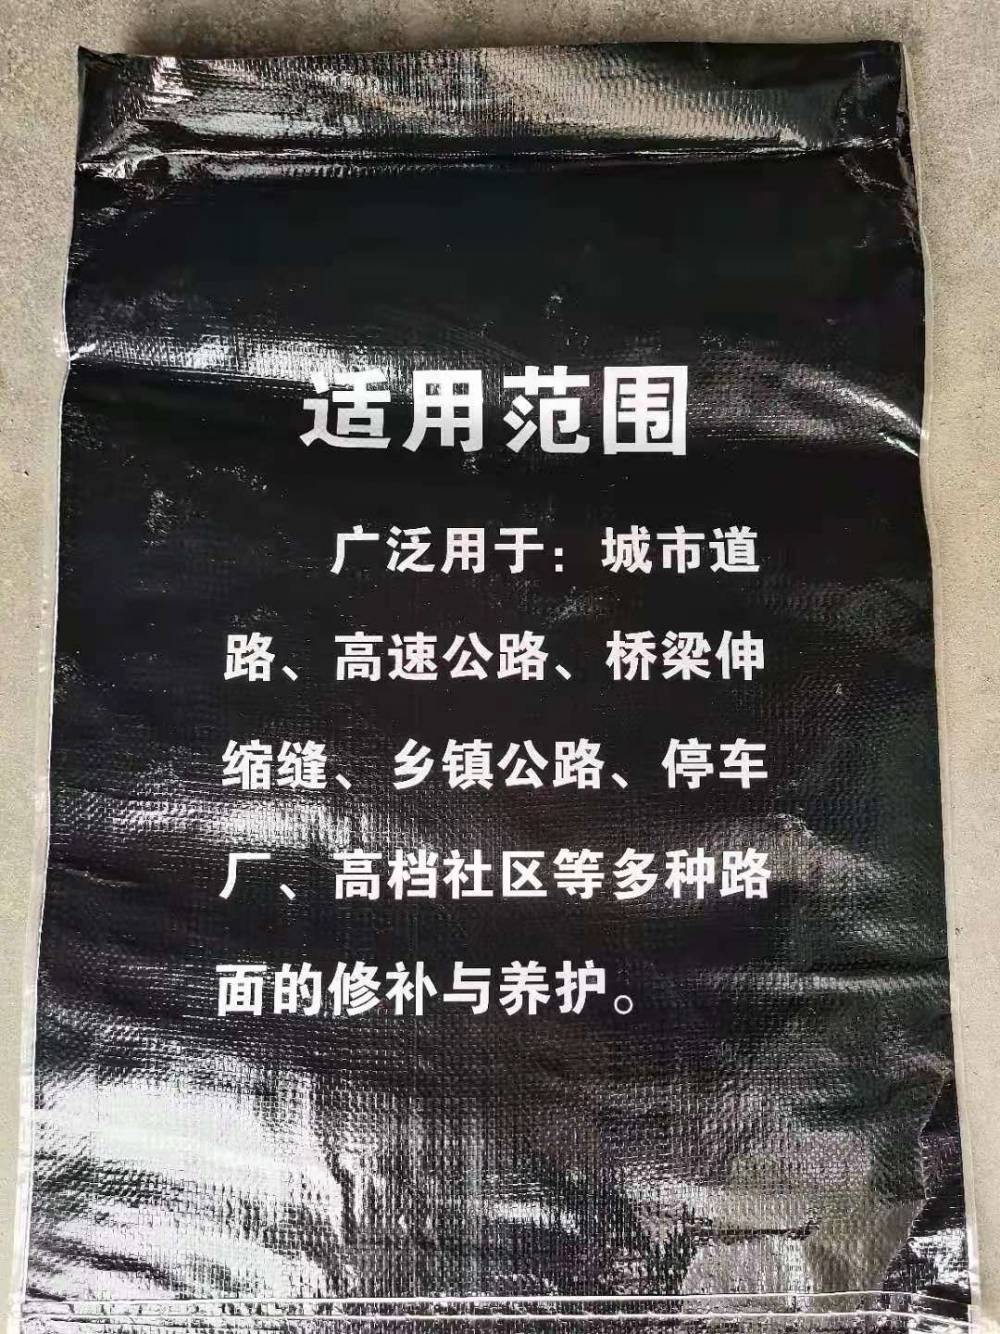 加盟江阴生产厂家图片沥青修补料欢迎